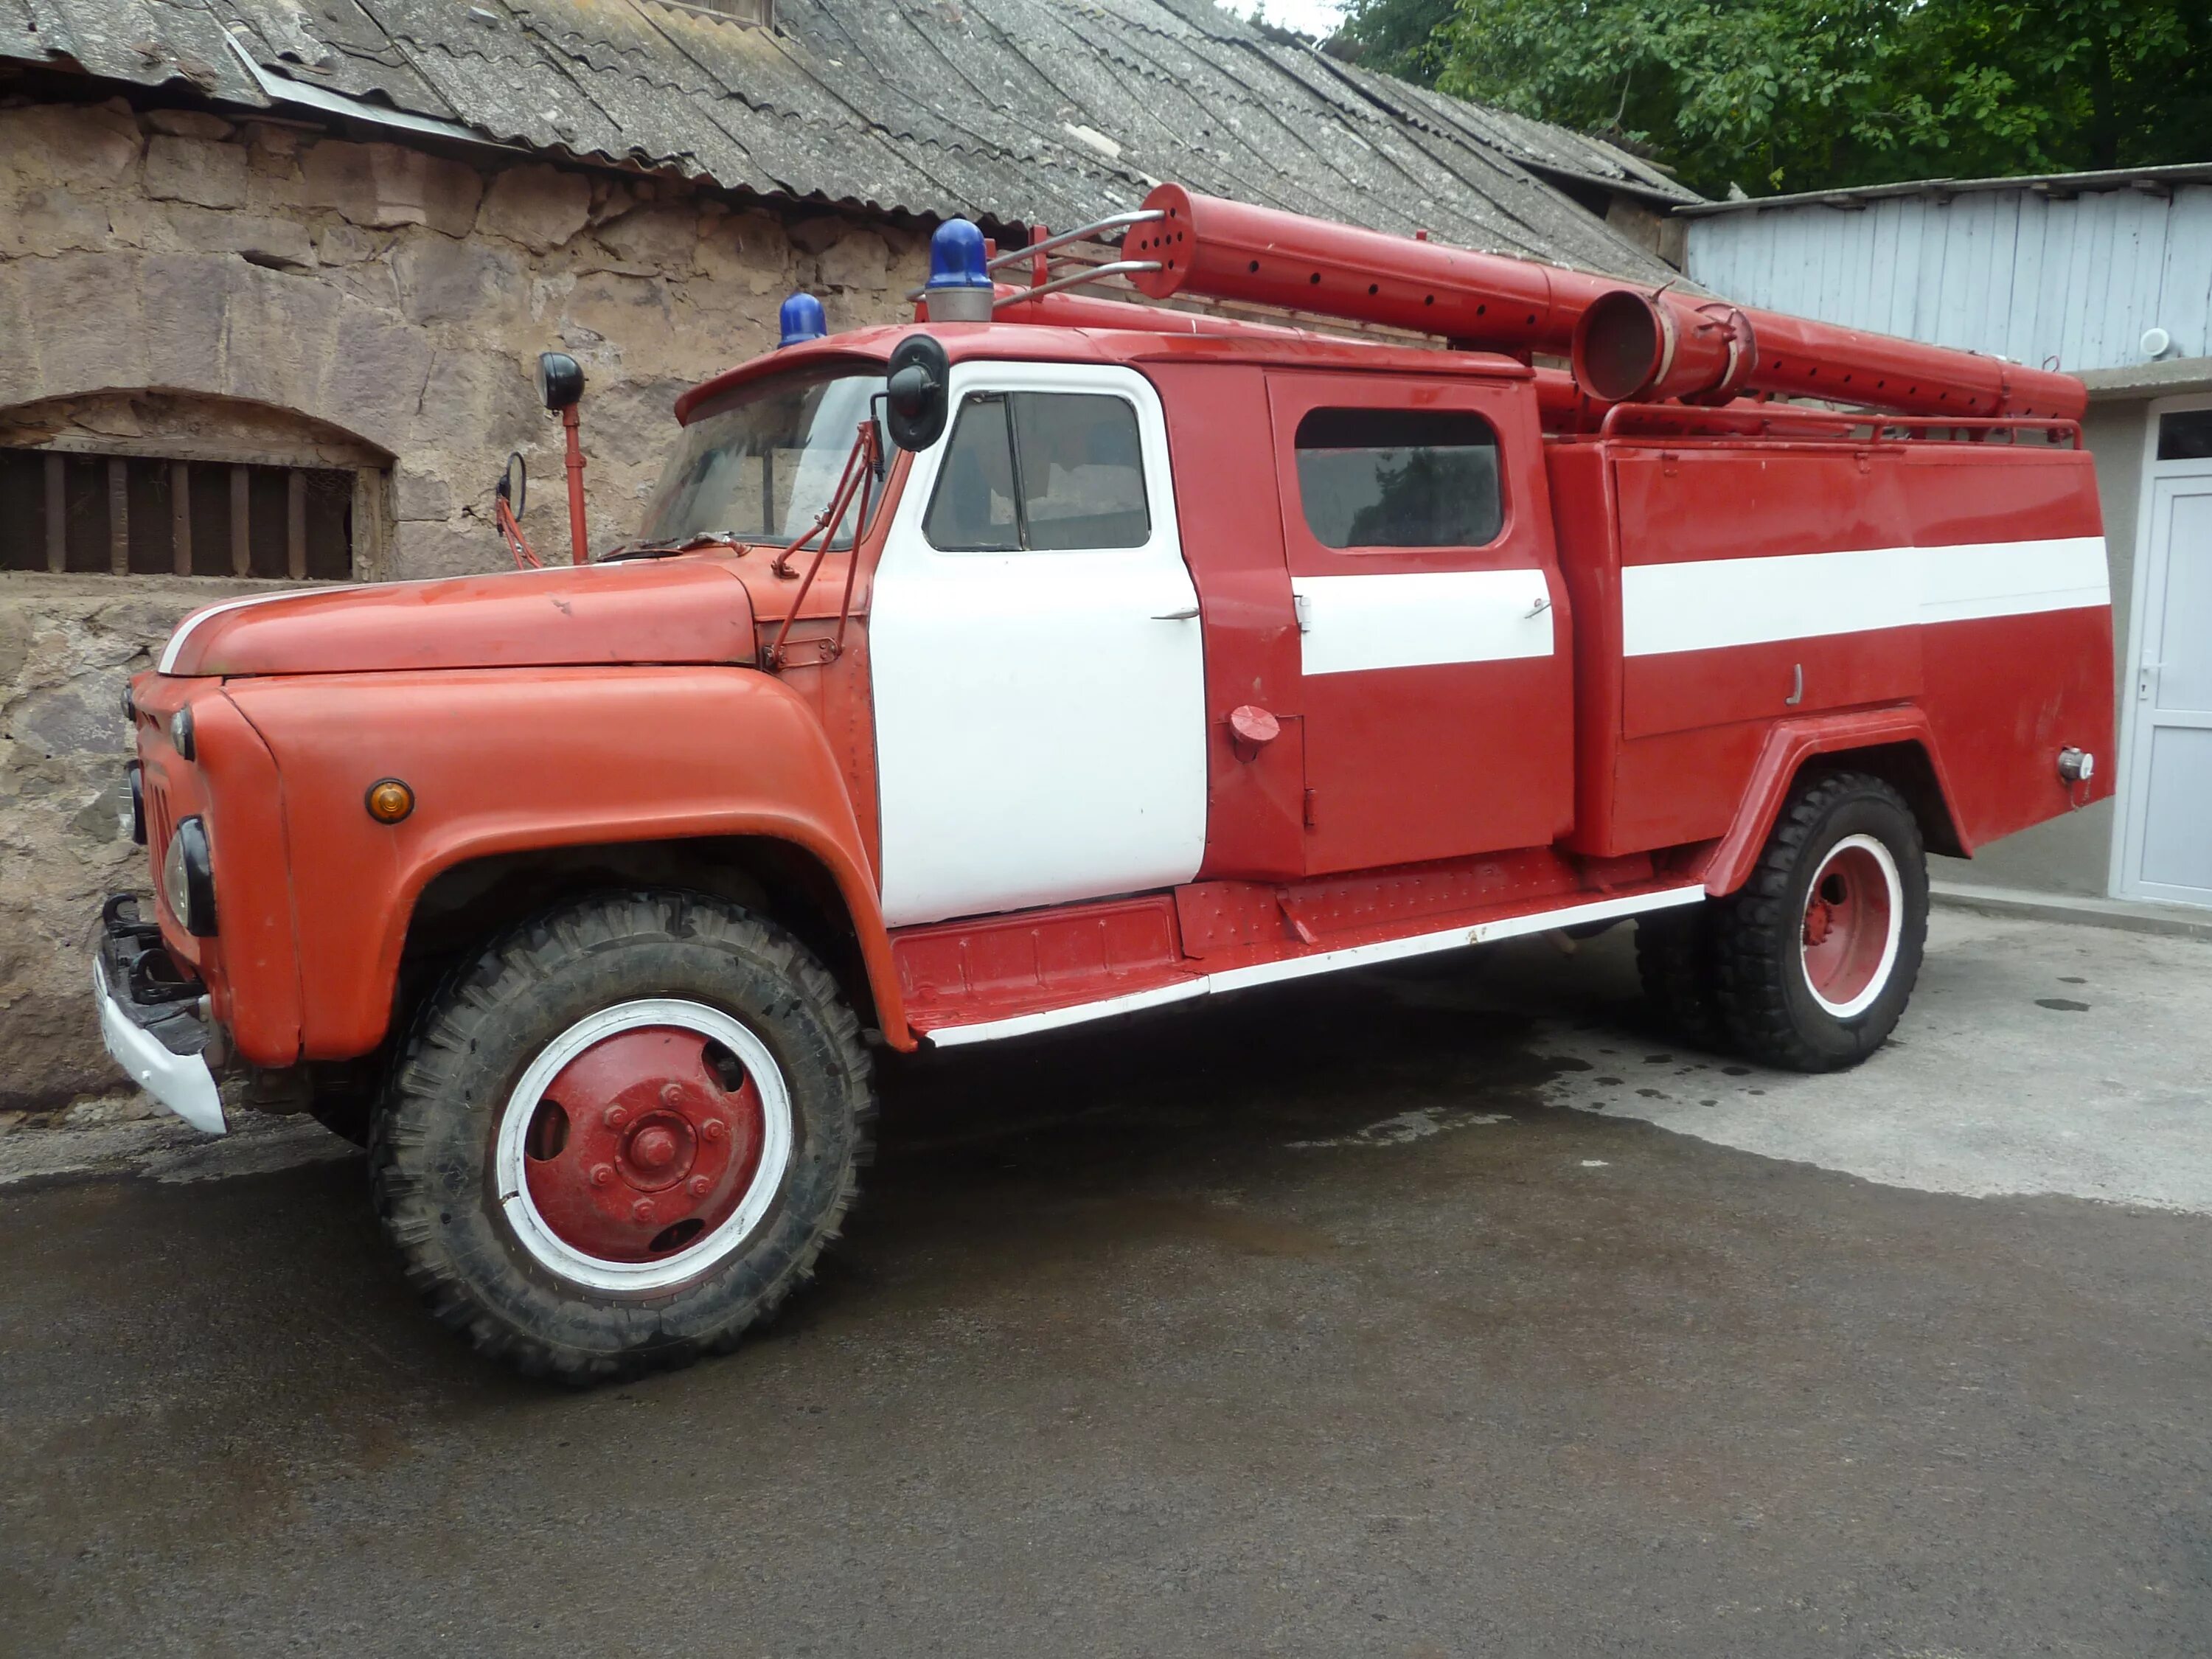 Пожарная машина АЦ 30. ГАЗ 53 пожарный. ГАЗ 53 АЦ 30 106г. АЦ 30 на базе ГАЗ 53.